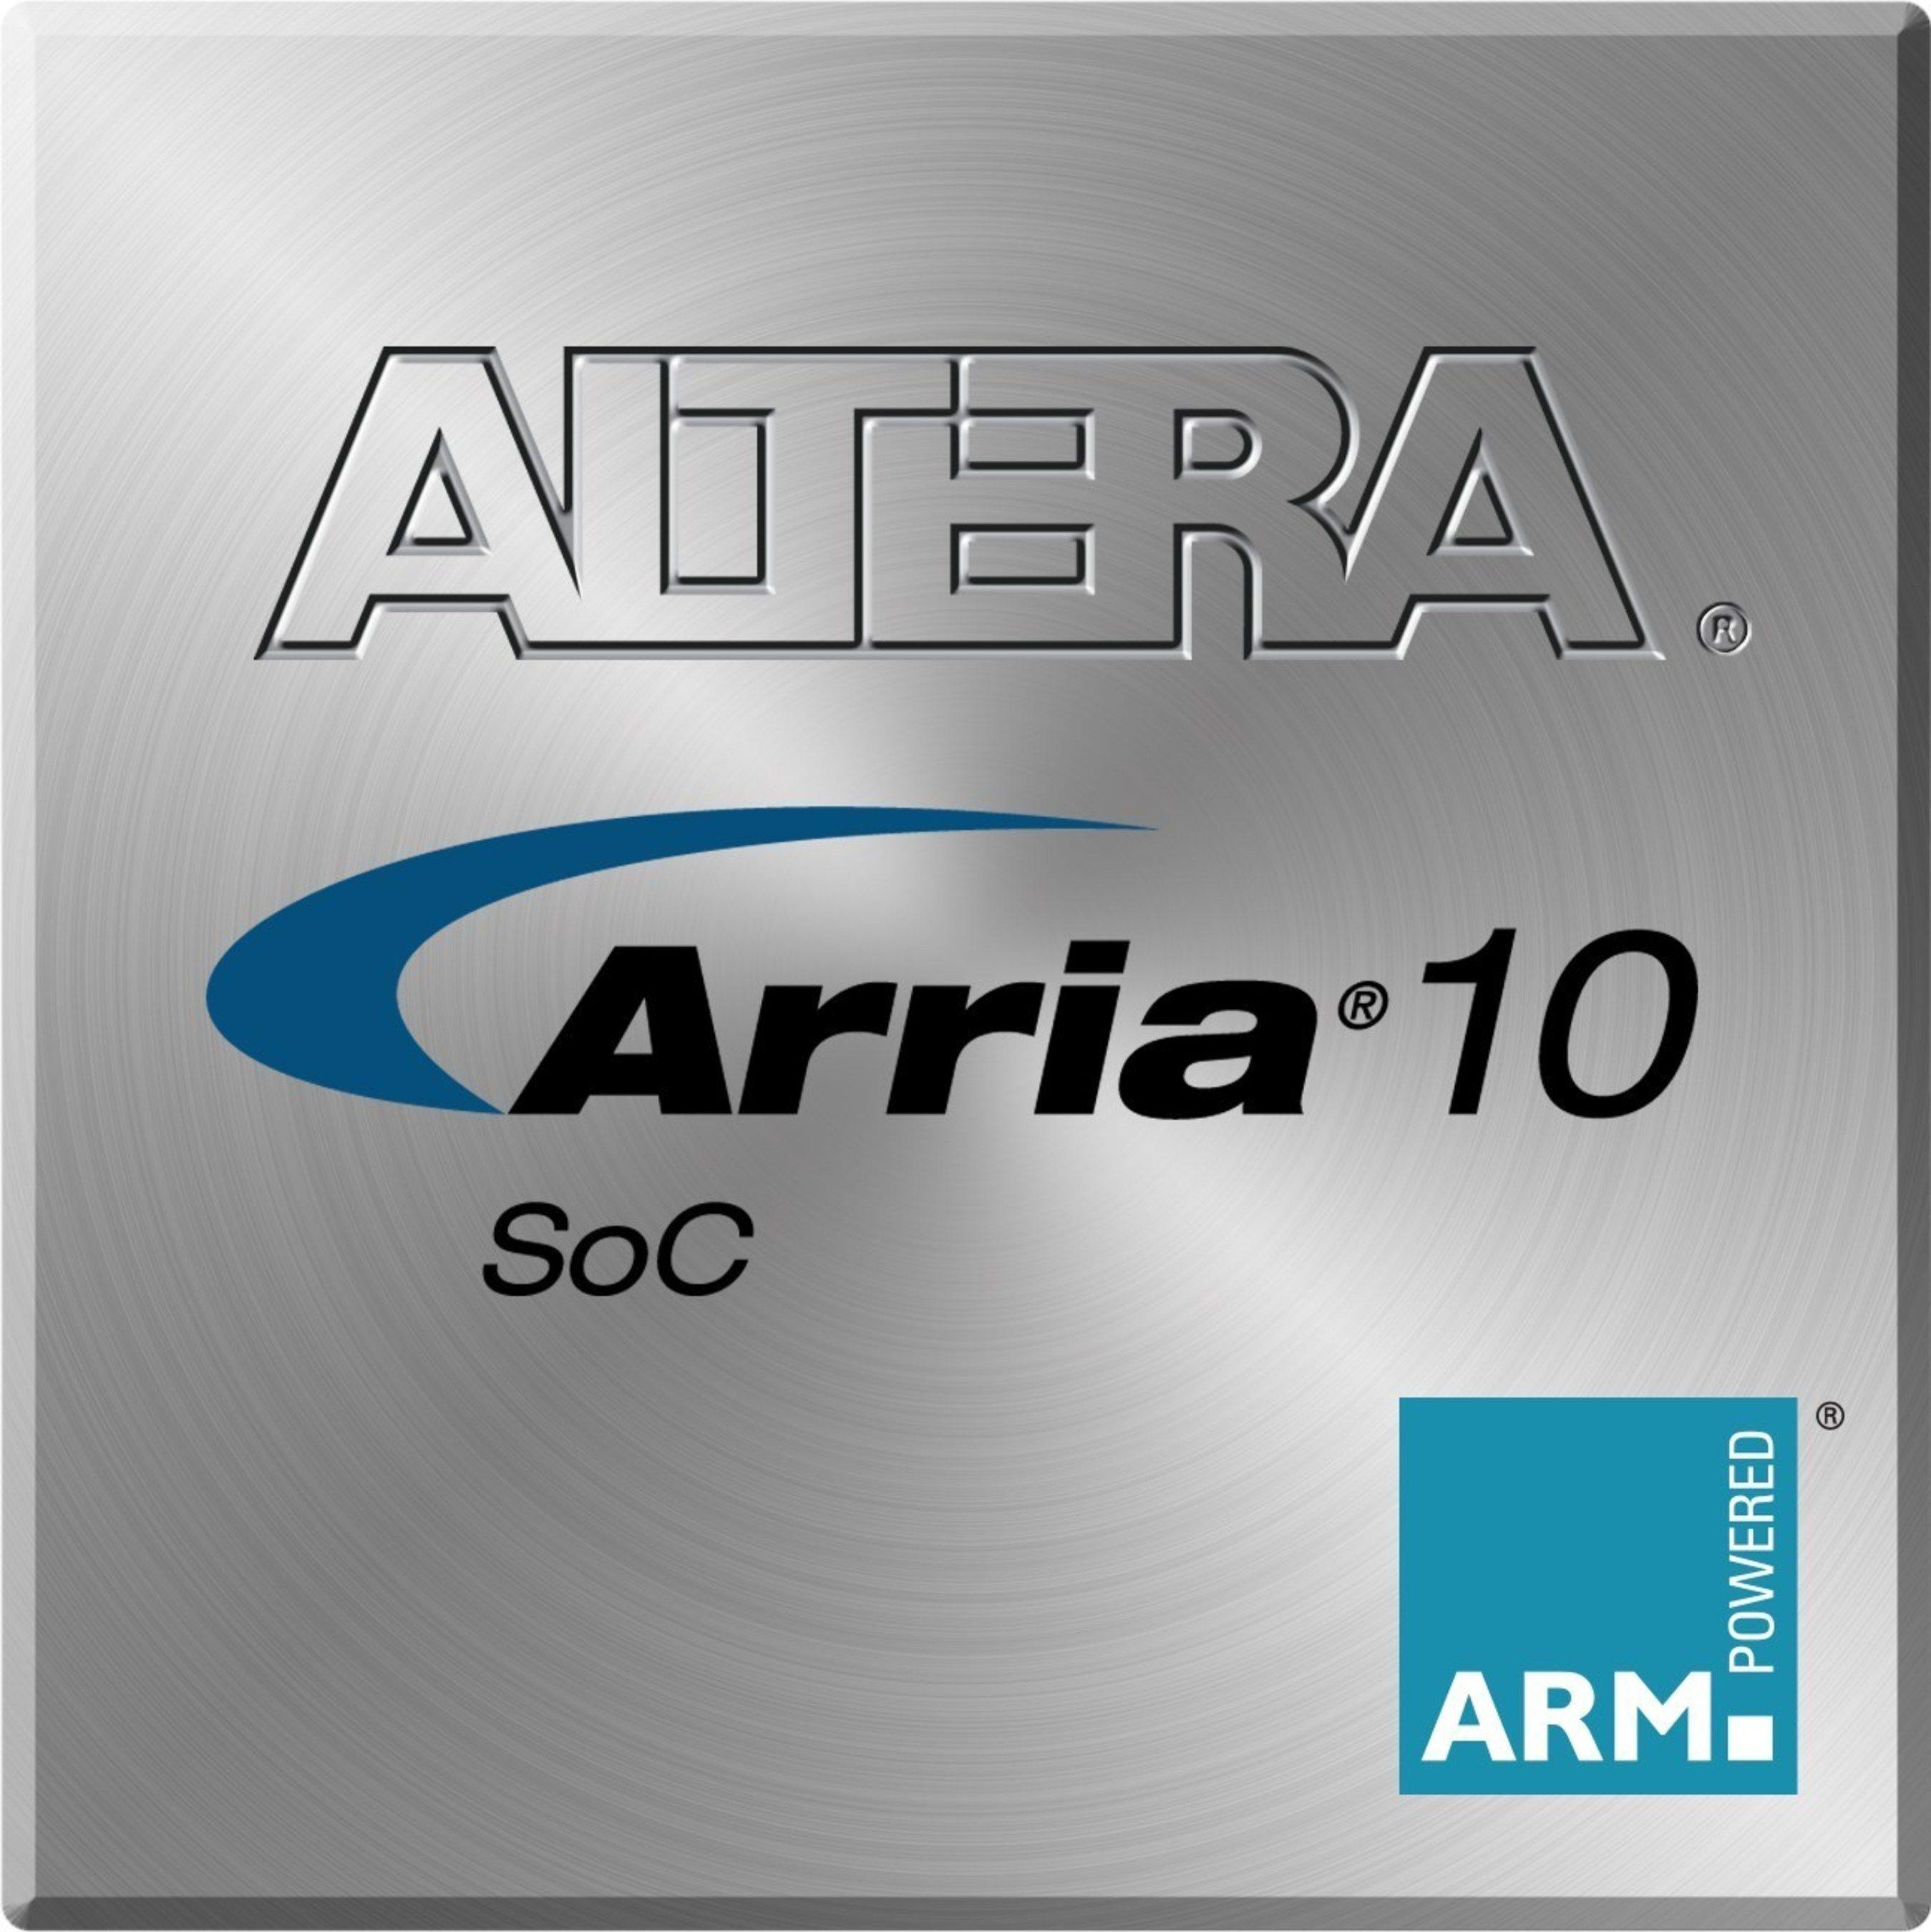 Altera Logo - Altera Ships 20 nm SoCs